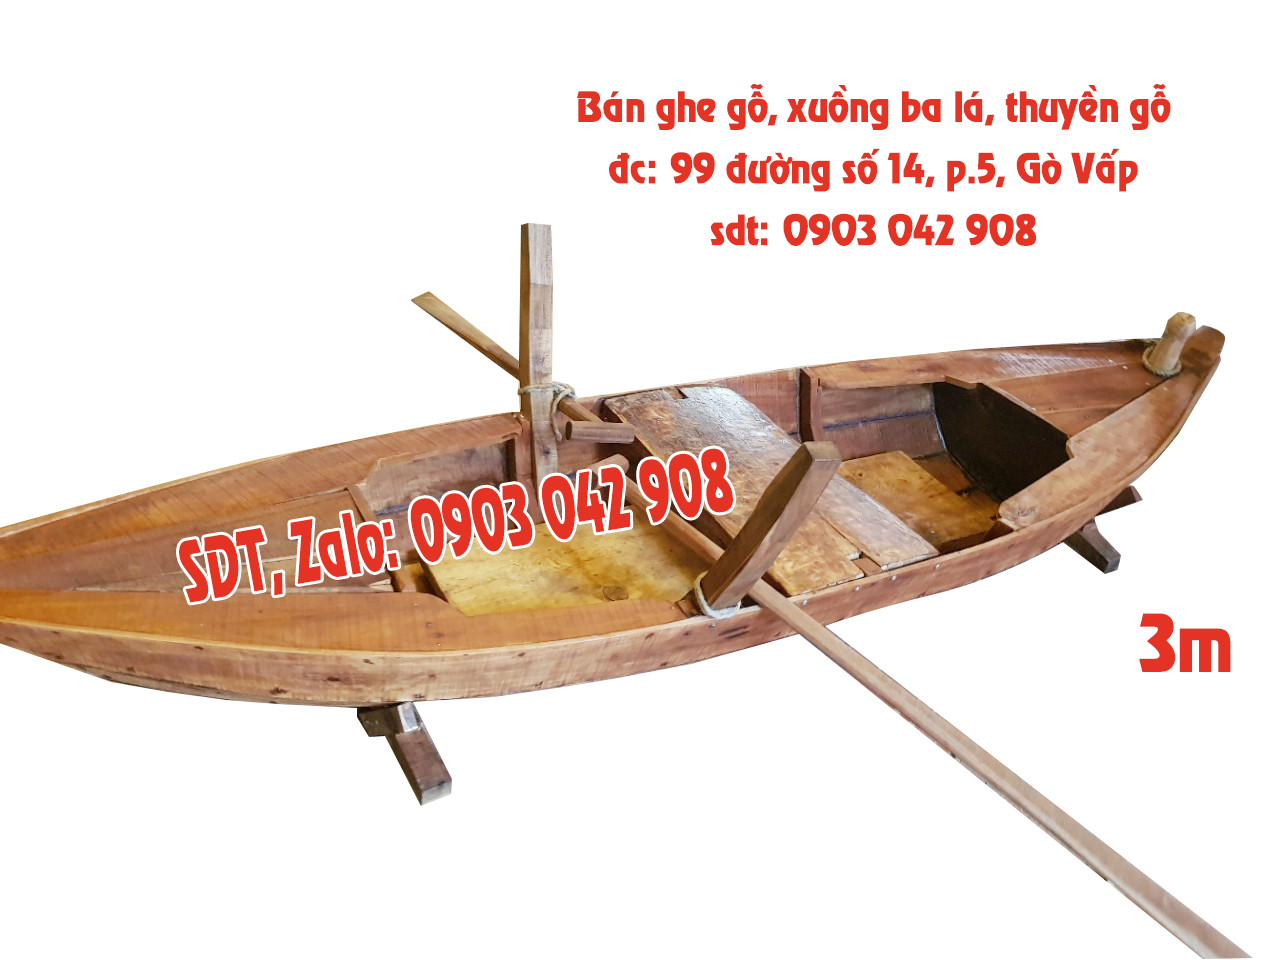 Hình ảnh bán thuyền gỗ dài 3m